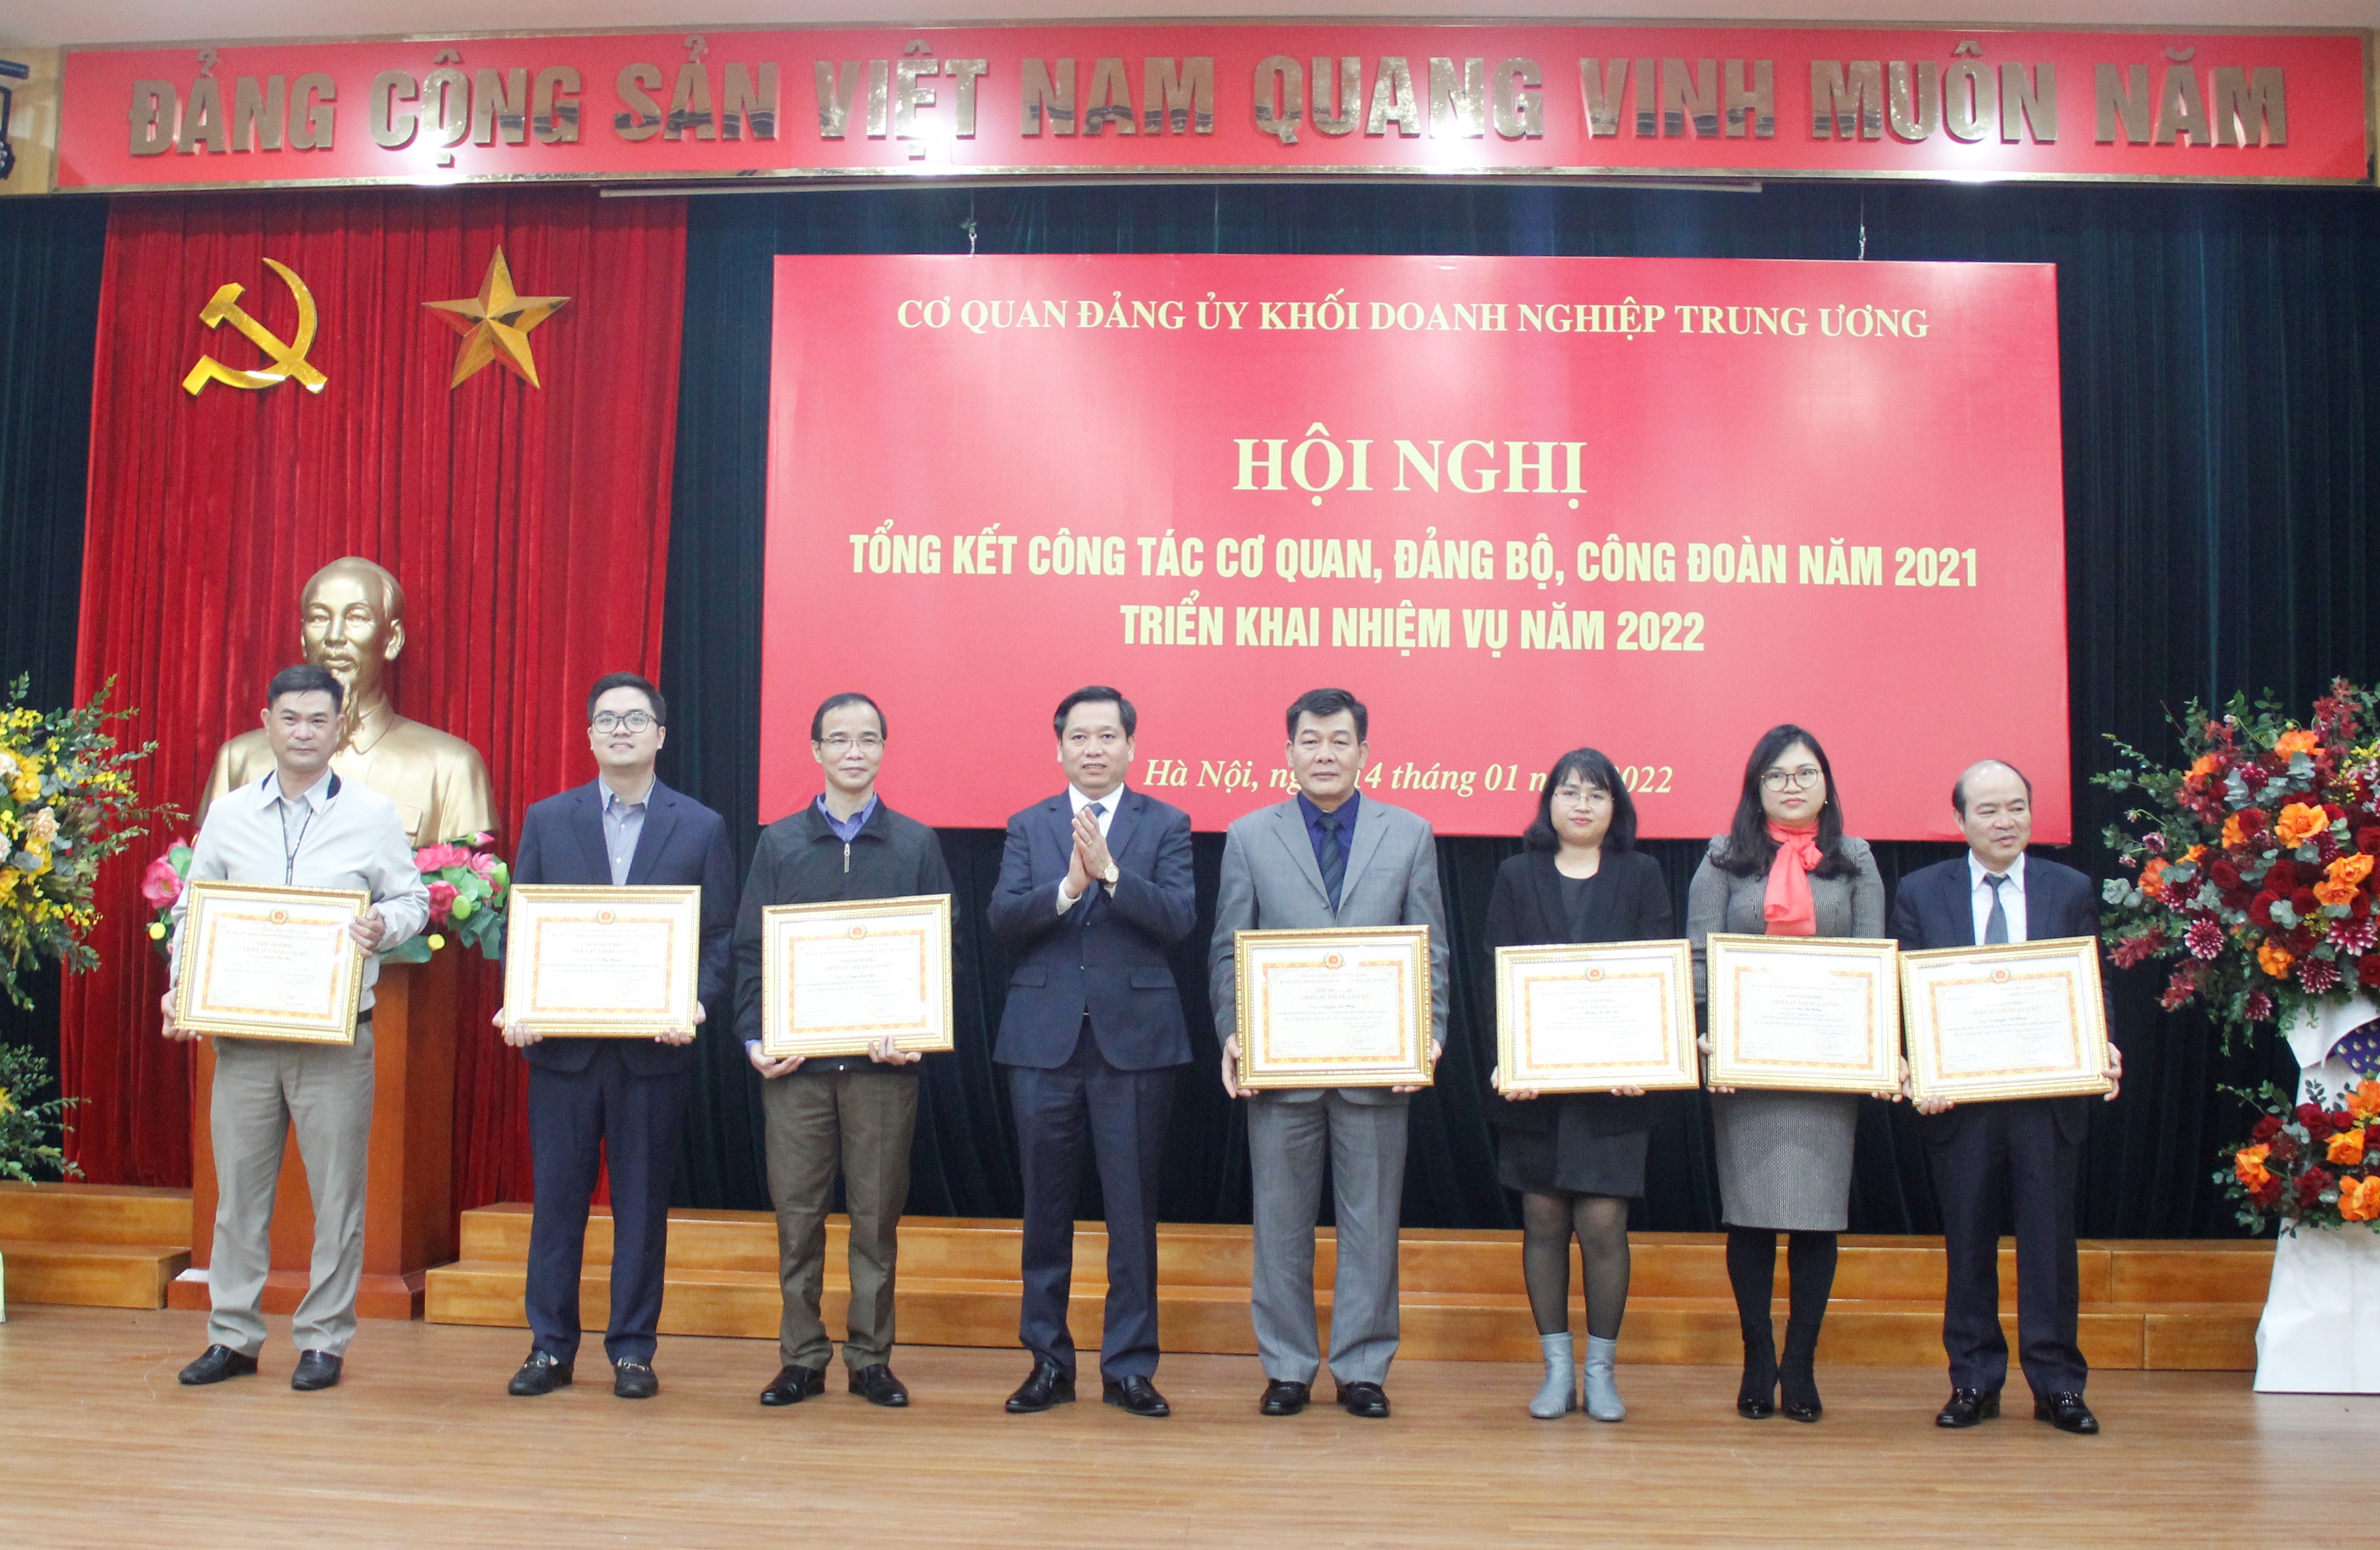 Đồng chí Nguyễn Long Hải, Ủy viên dự khuyết BCH Trung ương Đảng, Bí thư Đảng ủy Khối, Thủ trưởng Cơ quan Đảng ủy Khối trao chứng nhận cho các cá nhân đạt danh hiệu “Chiến sĩ thi đua cơ sở” năm 2021.